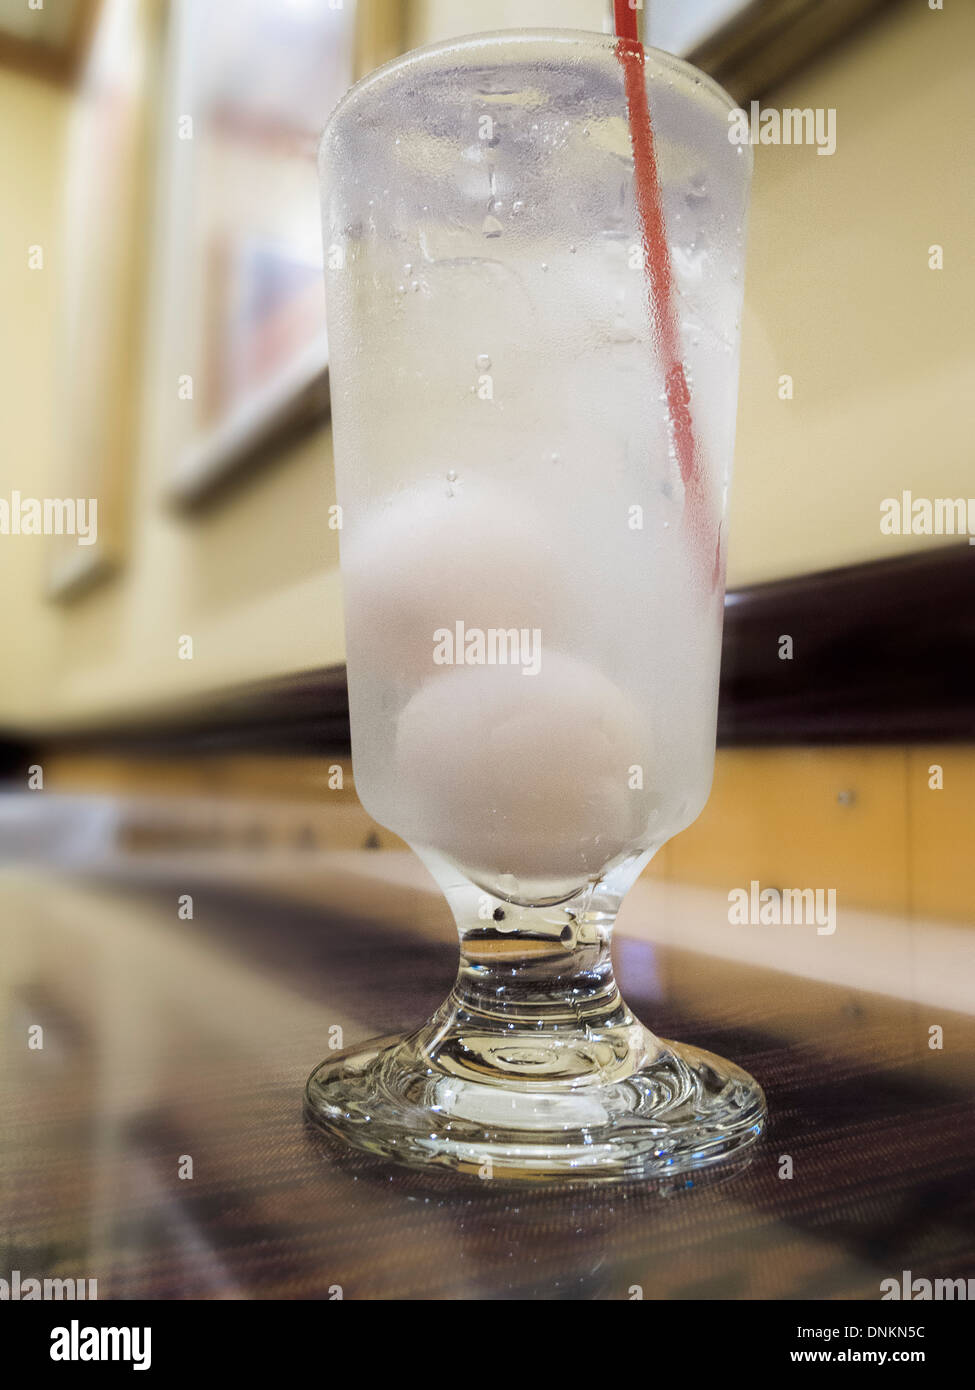 Une glace froide rafraîchissante boisson à base de litchi trempé dans du club soda Banque D'Images